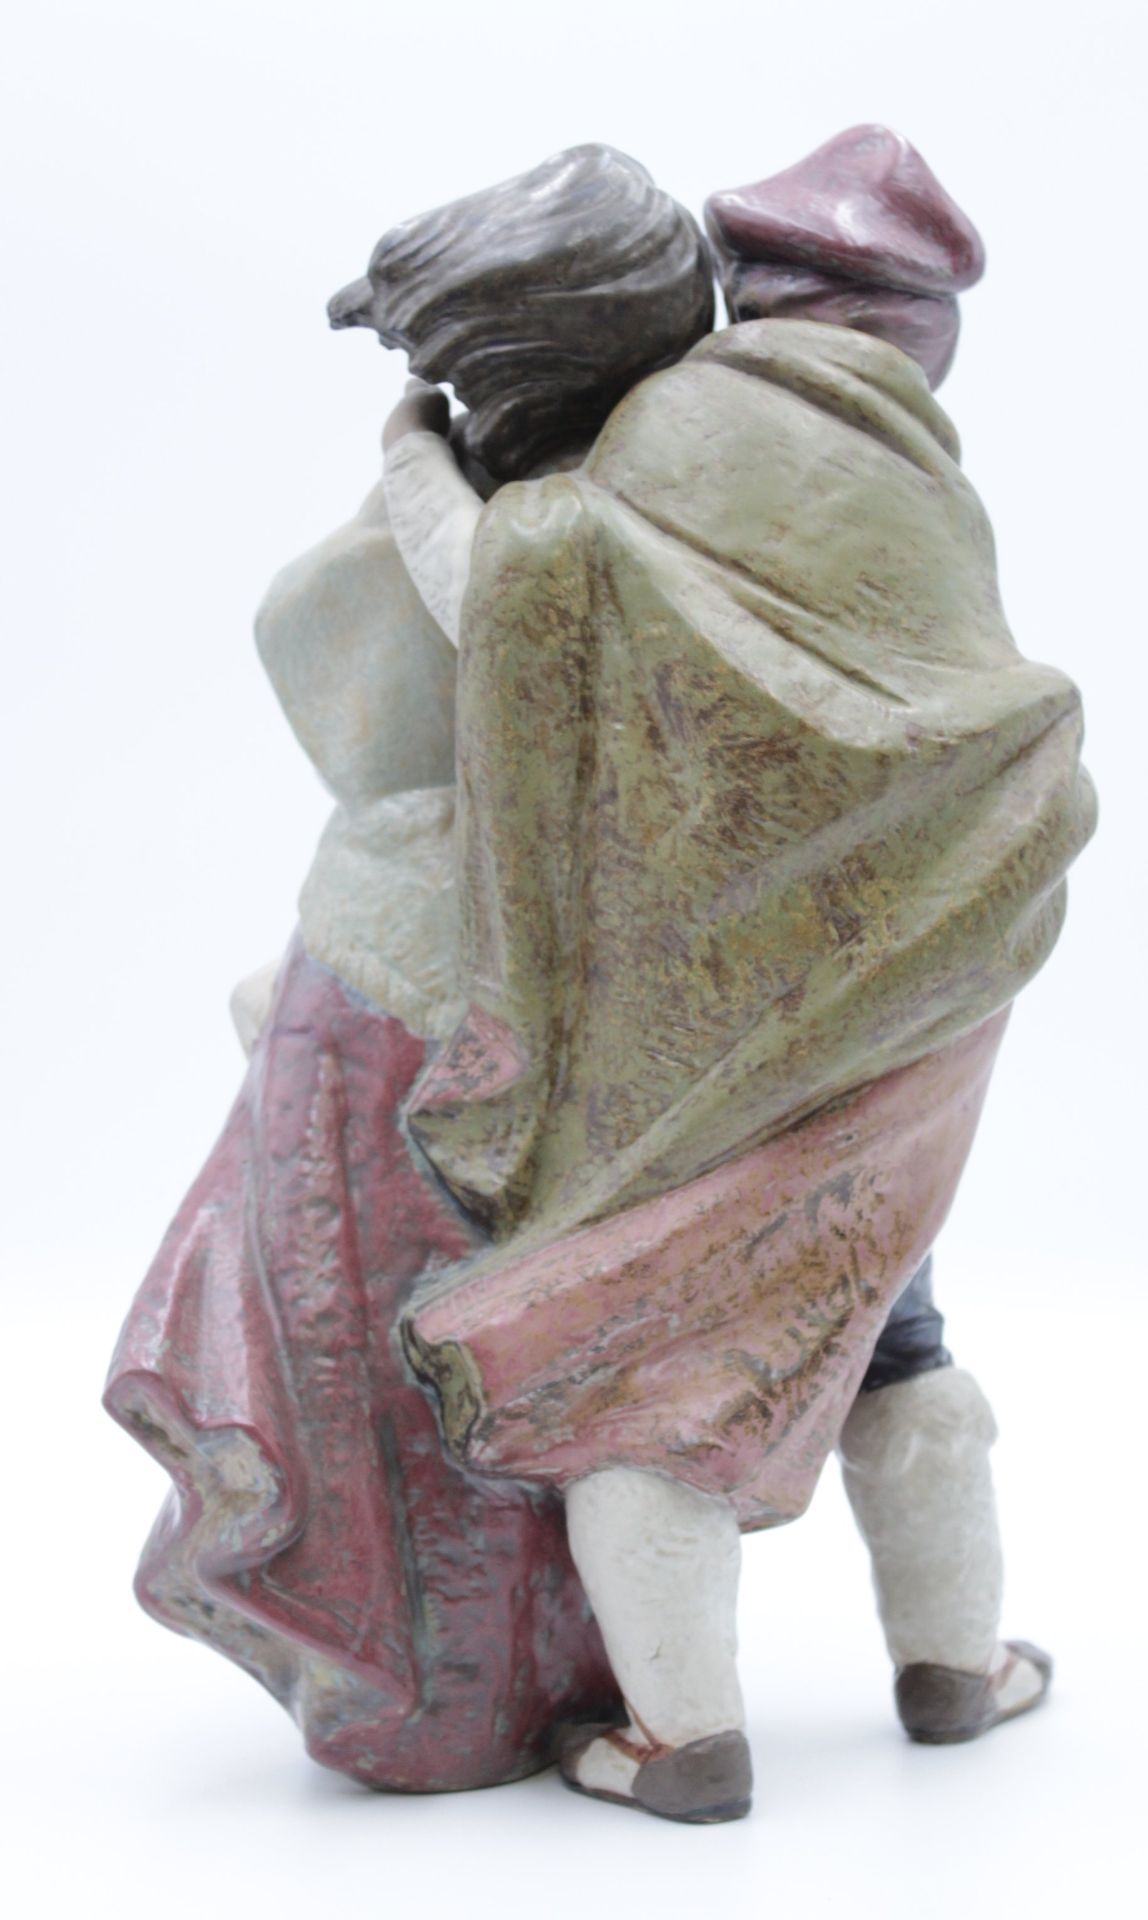 gr. Figurengruppe, Lladro Spain, Modellnr. 1279, Gegen den Wind, Juan Huerta, H-37cm. - Bild 3 aus 5